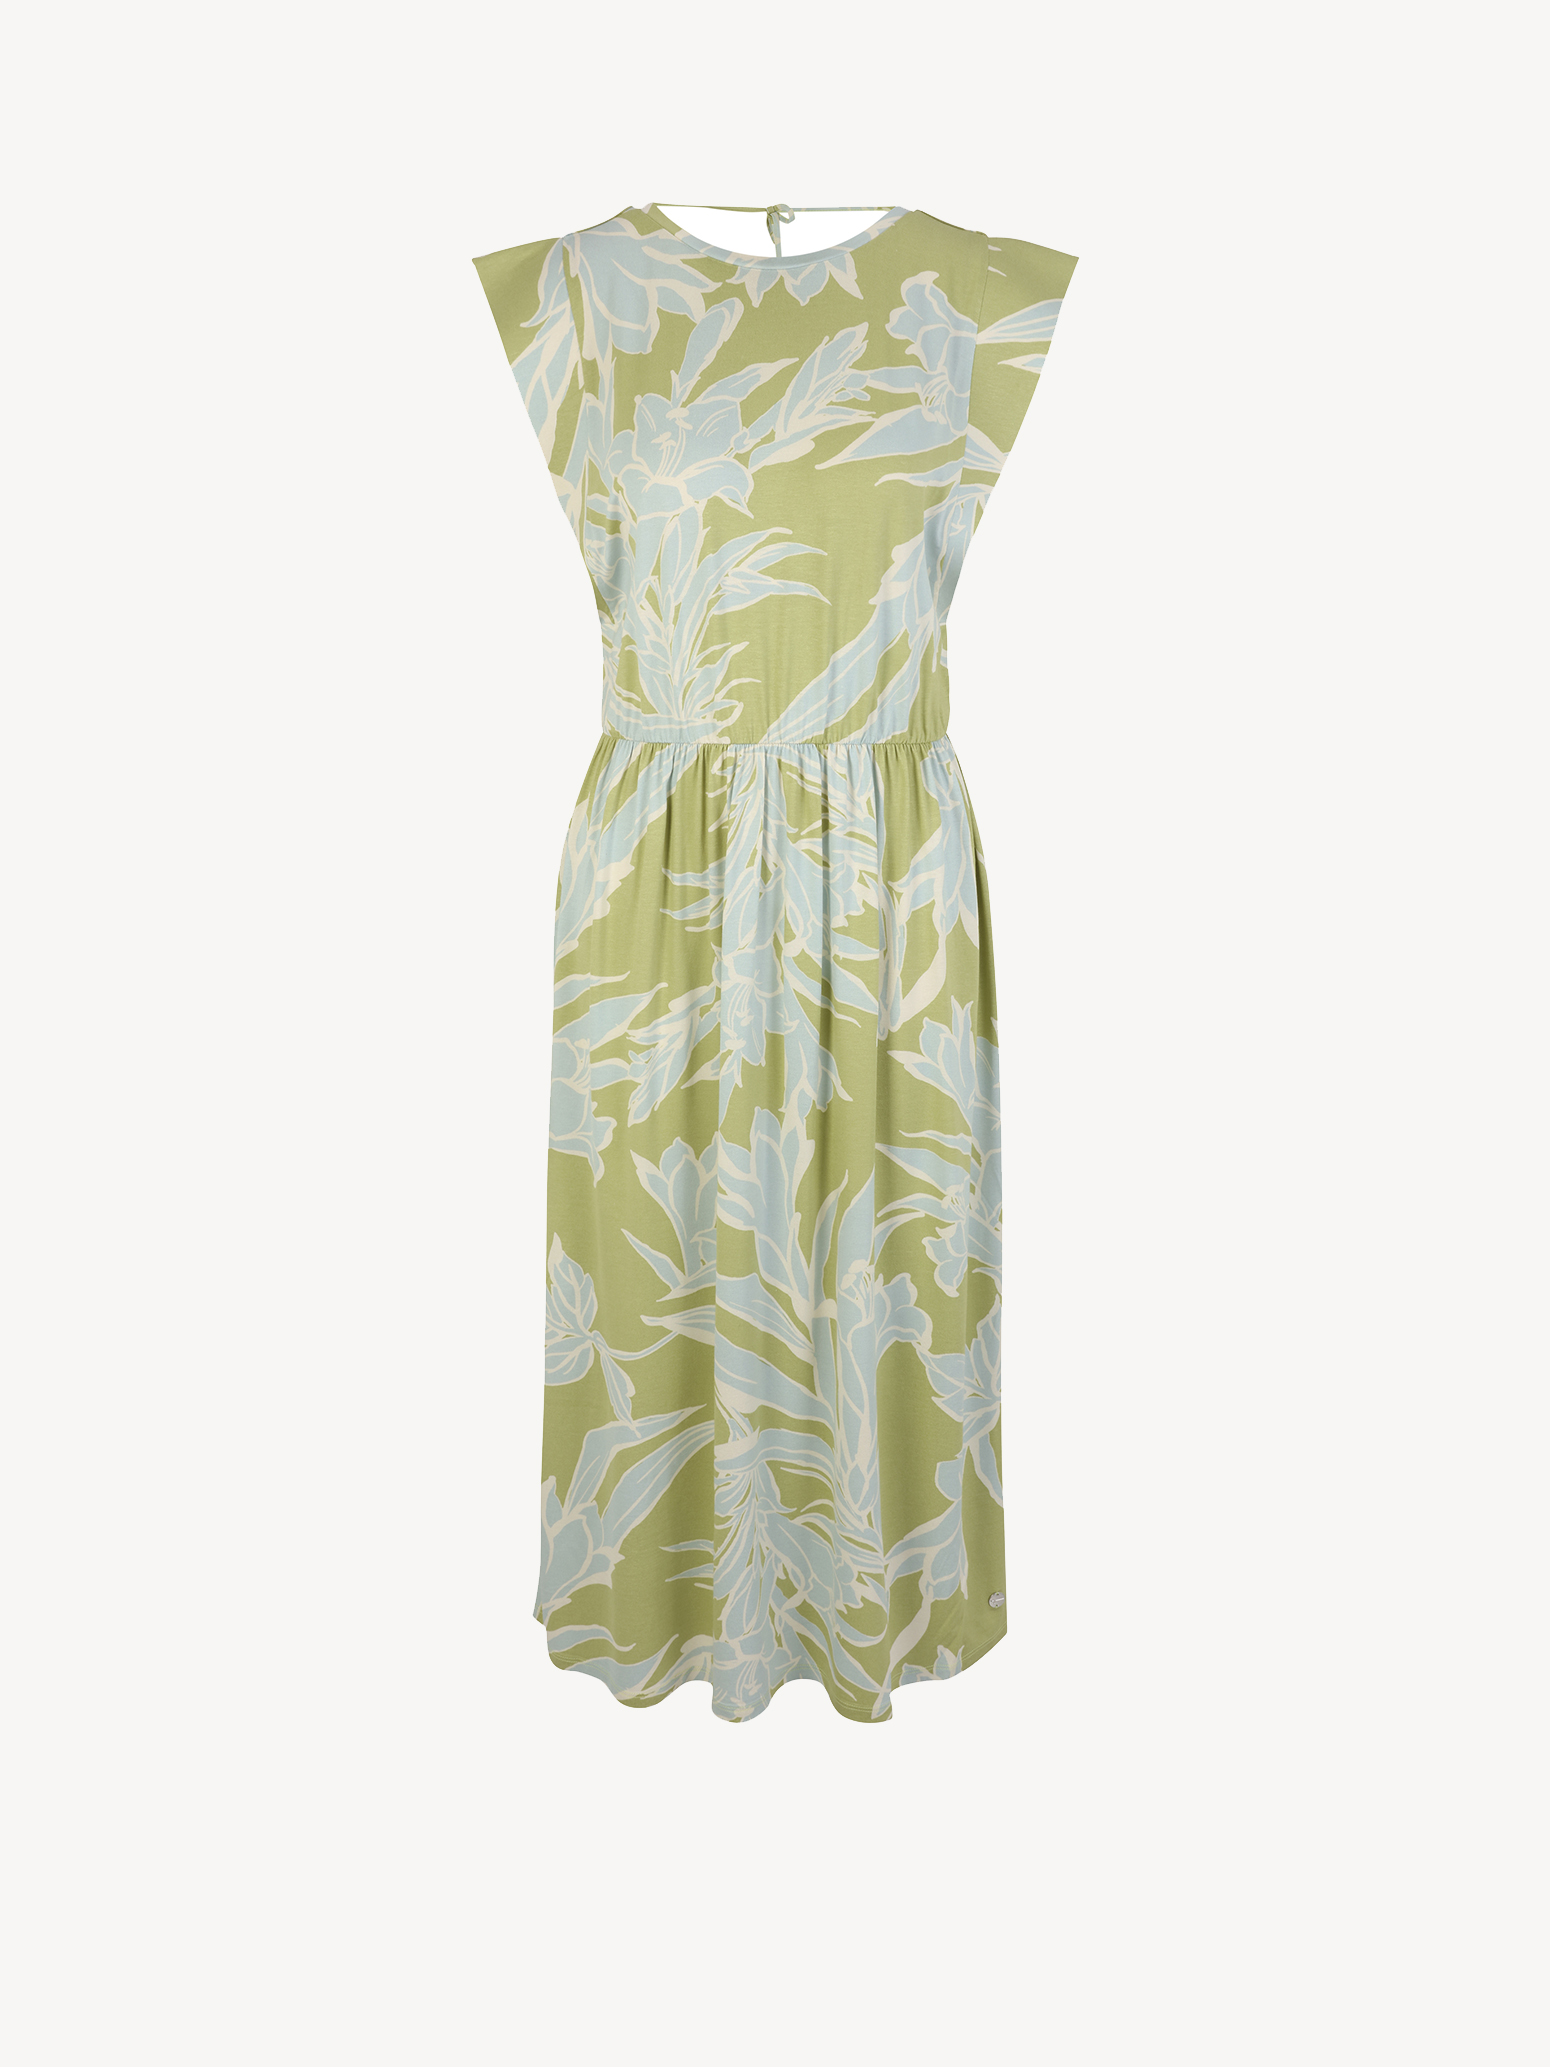 Kleid - grün TAW0430-63102: Kleider kaufen! online Tamaris